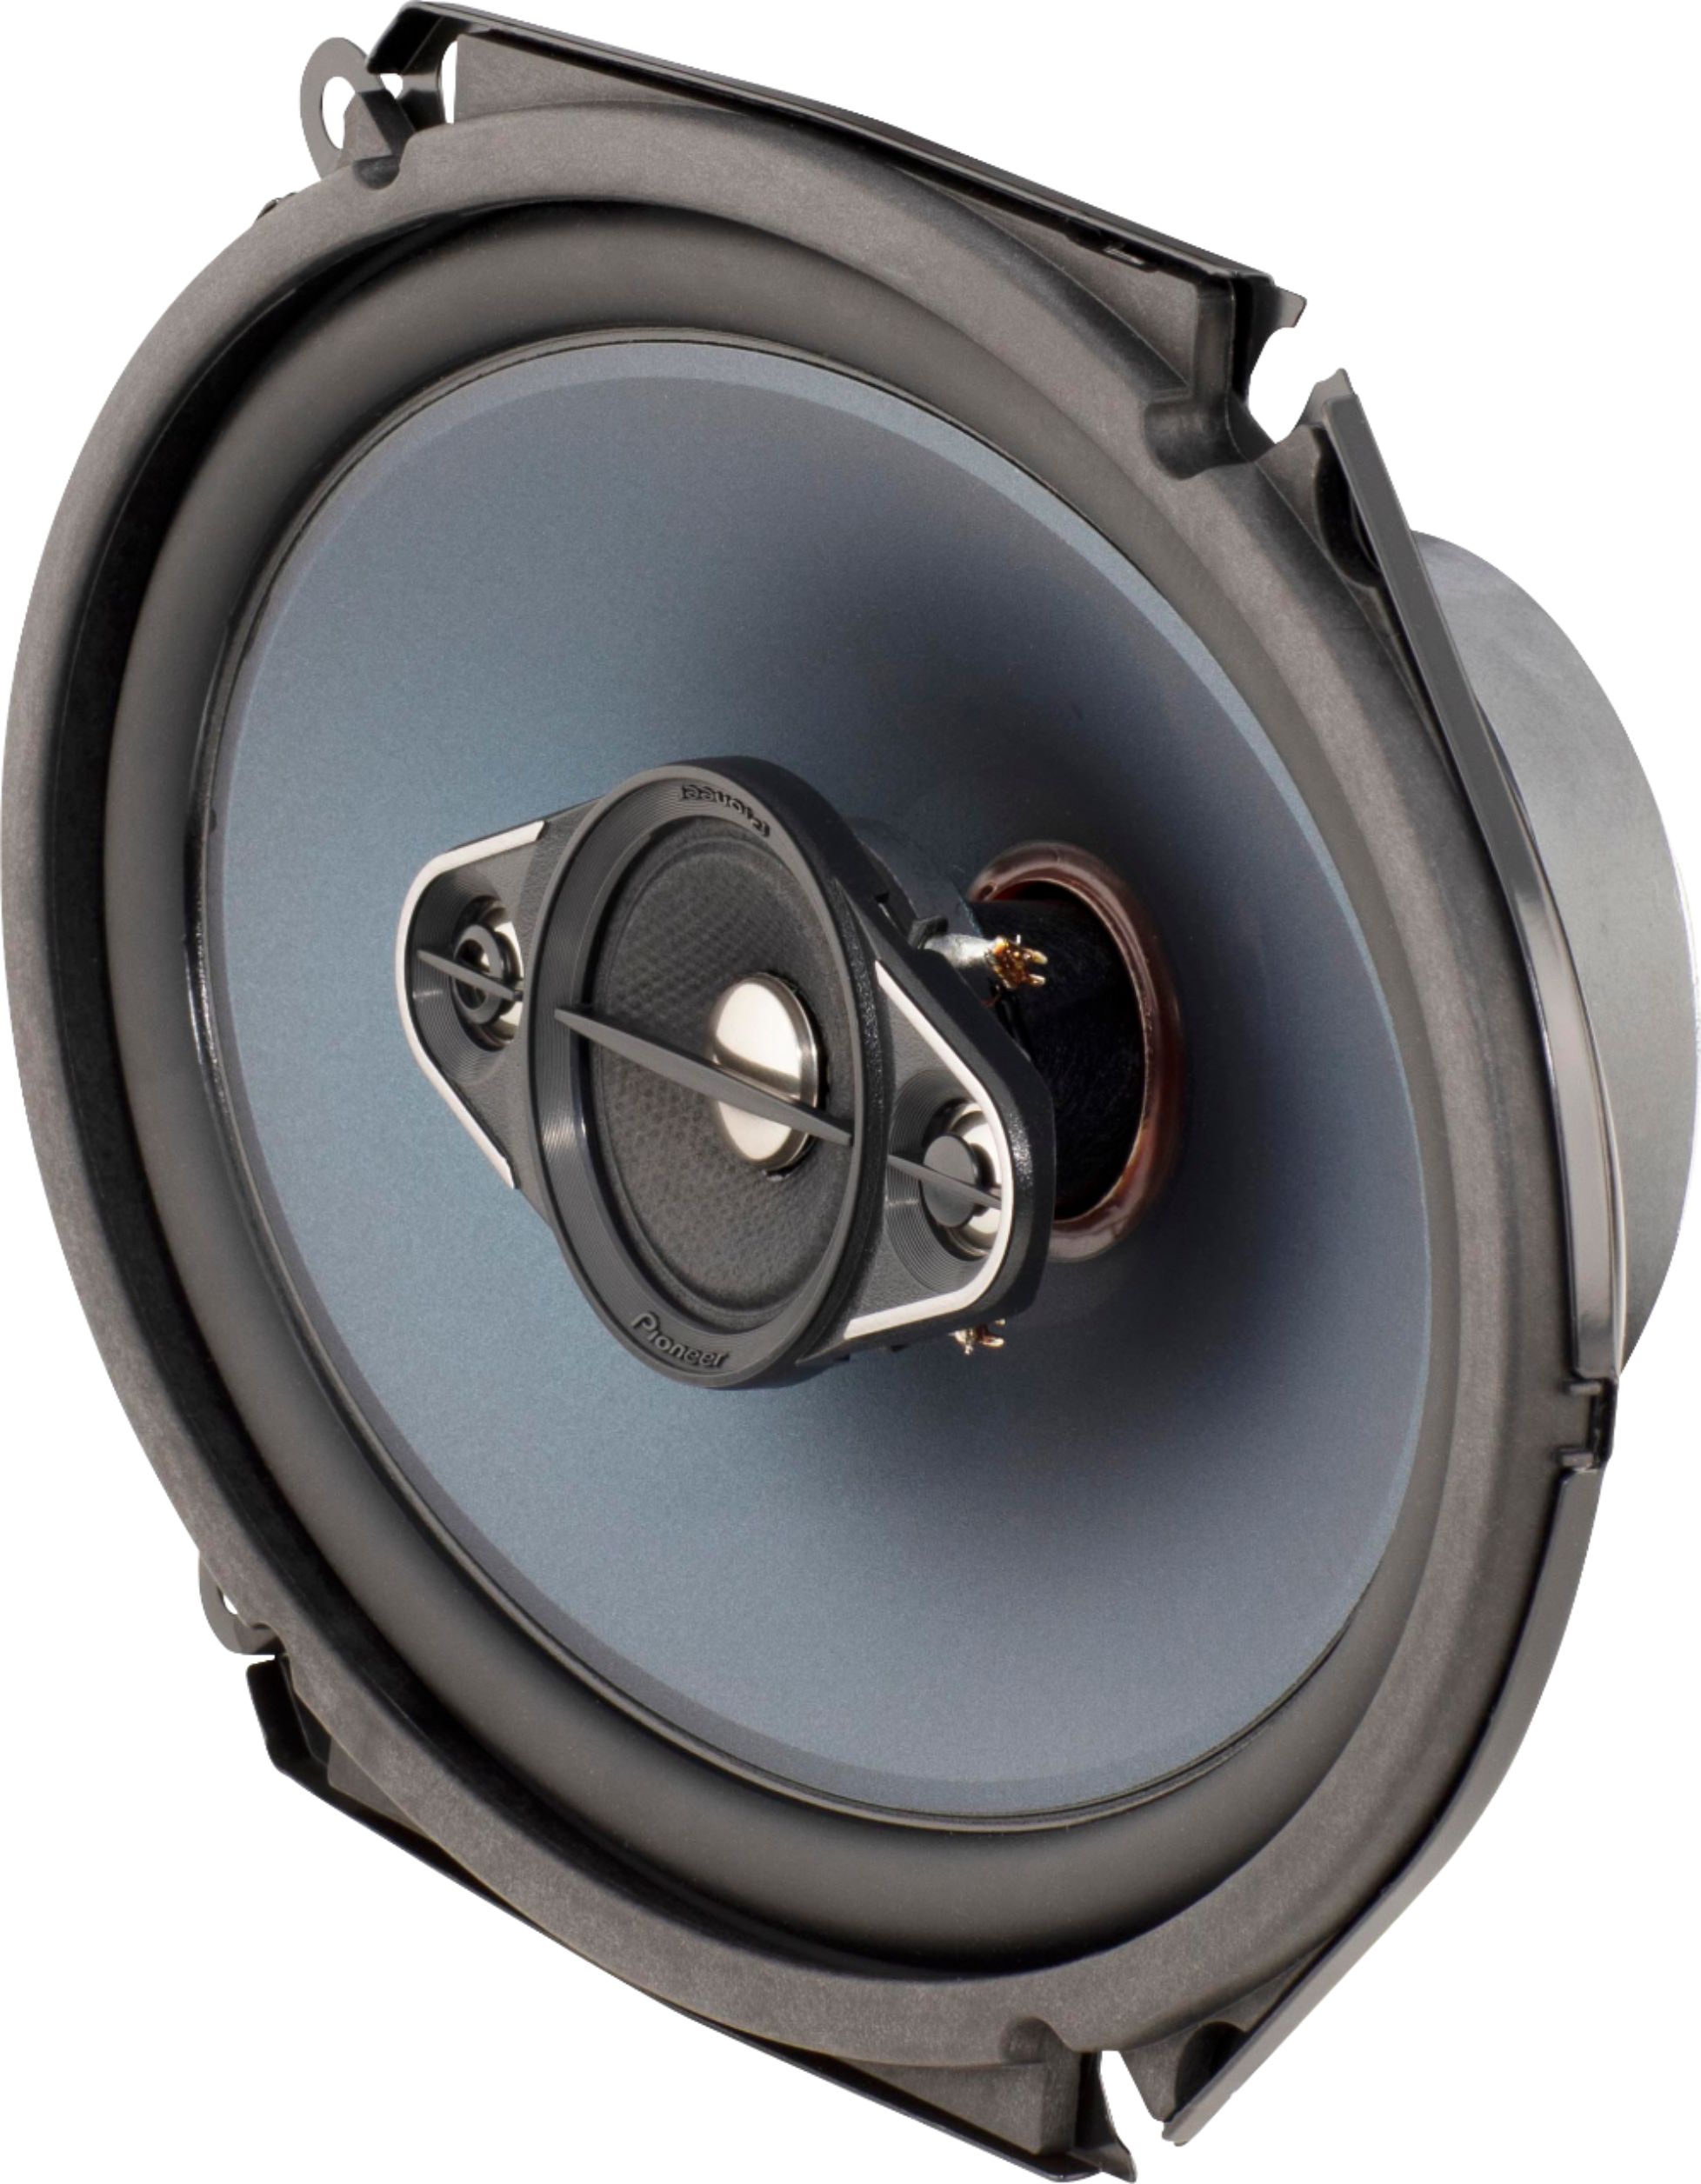 plaag Gewend Huiswerk Pioneer 6" x 8" 4-way, 350 W Max Power Coaxial Speakers (pair) BLUE  TS-A683R - Best Buy